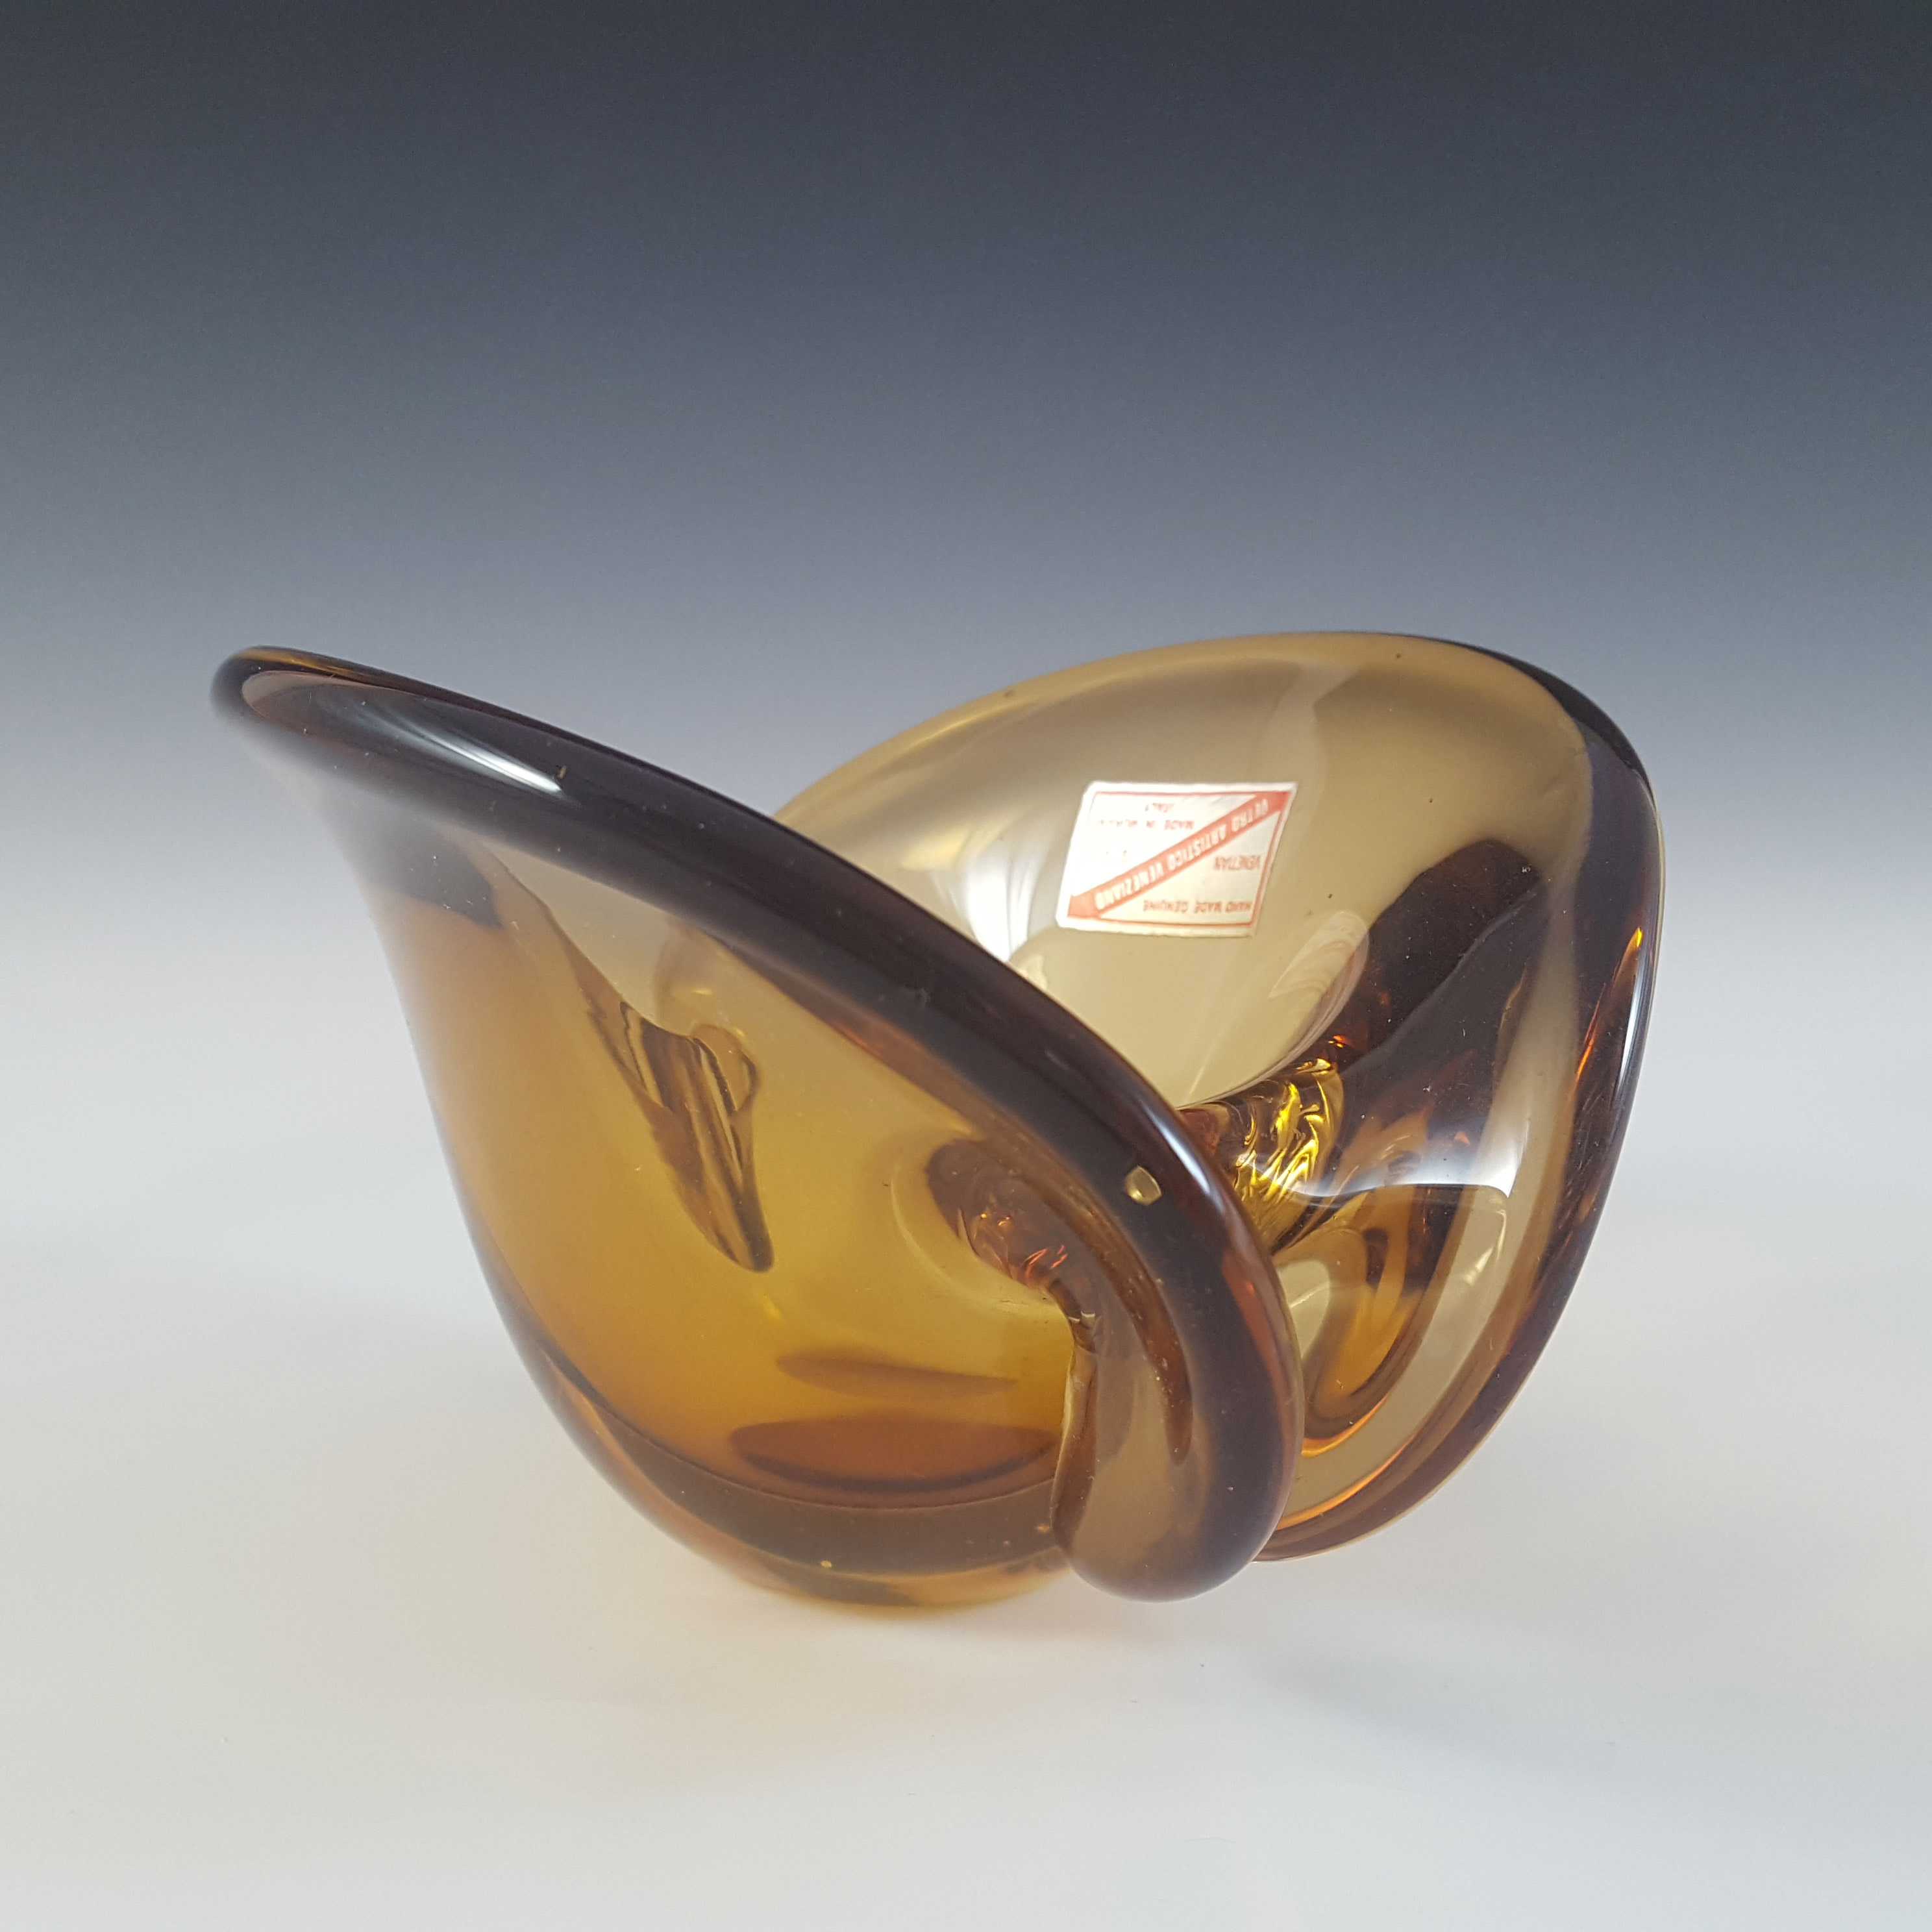 Vetro Artistico Veneziano Murano Amber Glass Bowl / Vase - Click Image to Close